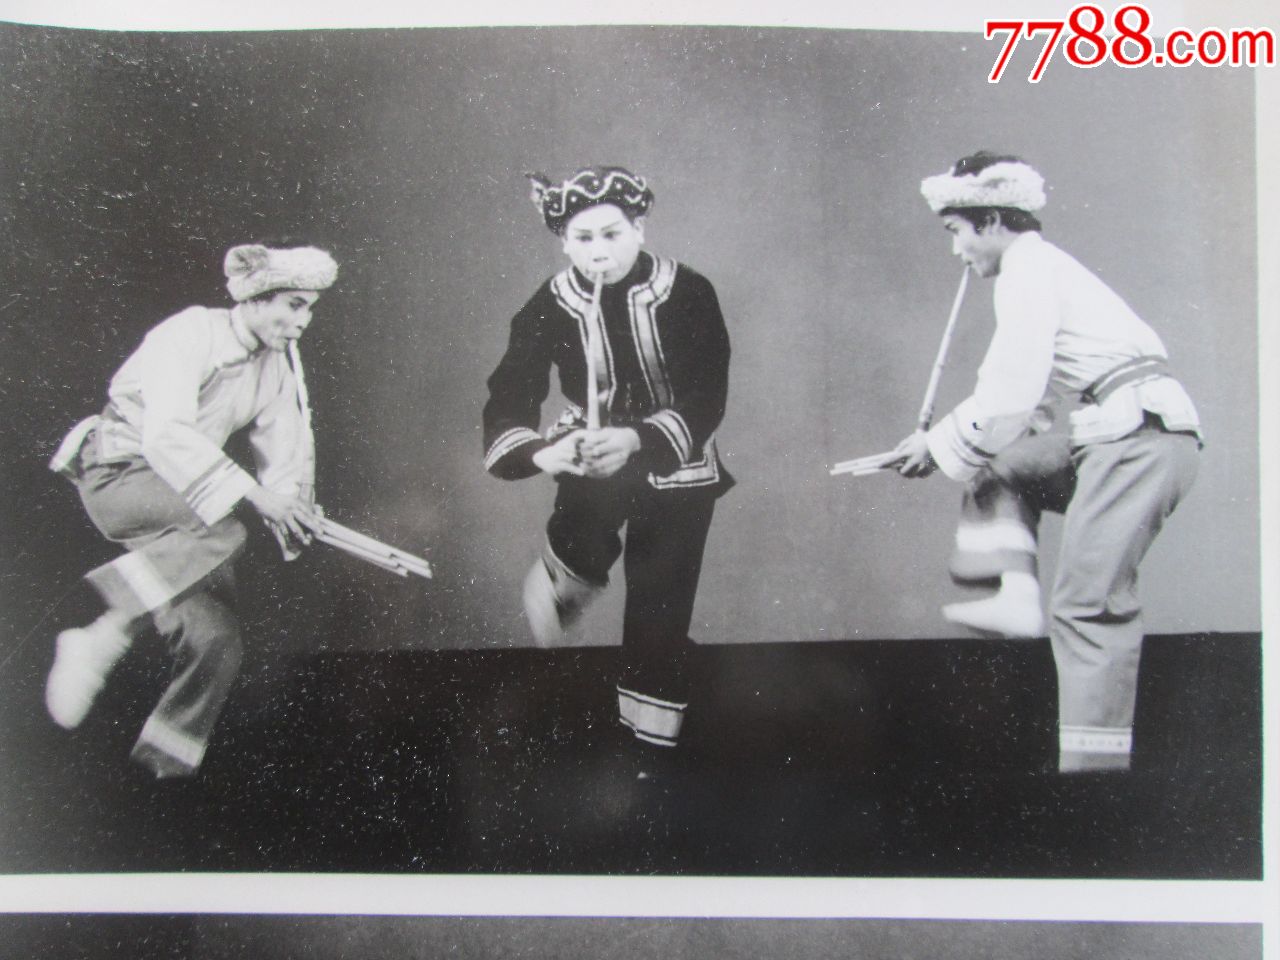 上图:拉祜族舞蹈《斑鸠拣谷子》下图:傈僳族舞蹈《跳蹢脚》,老照片